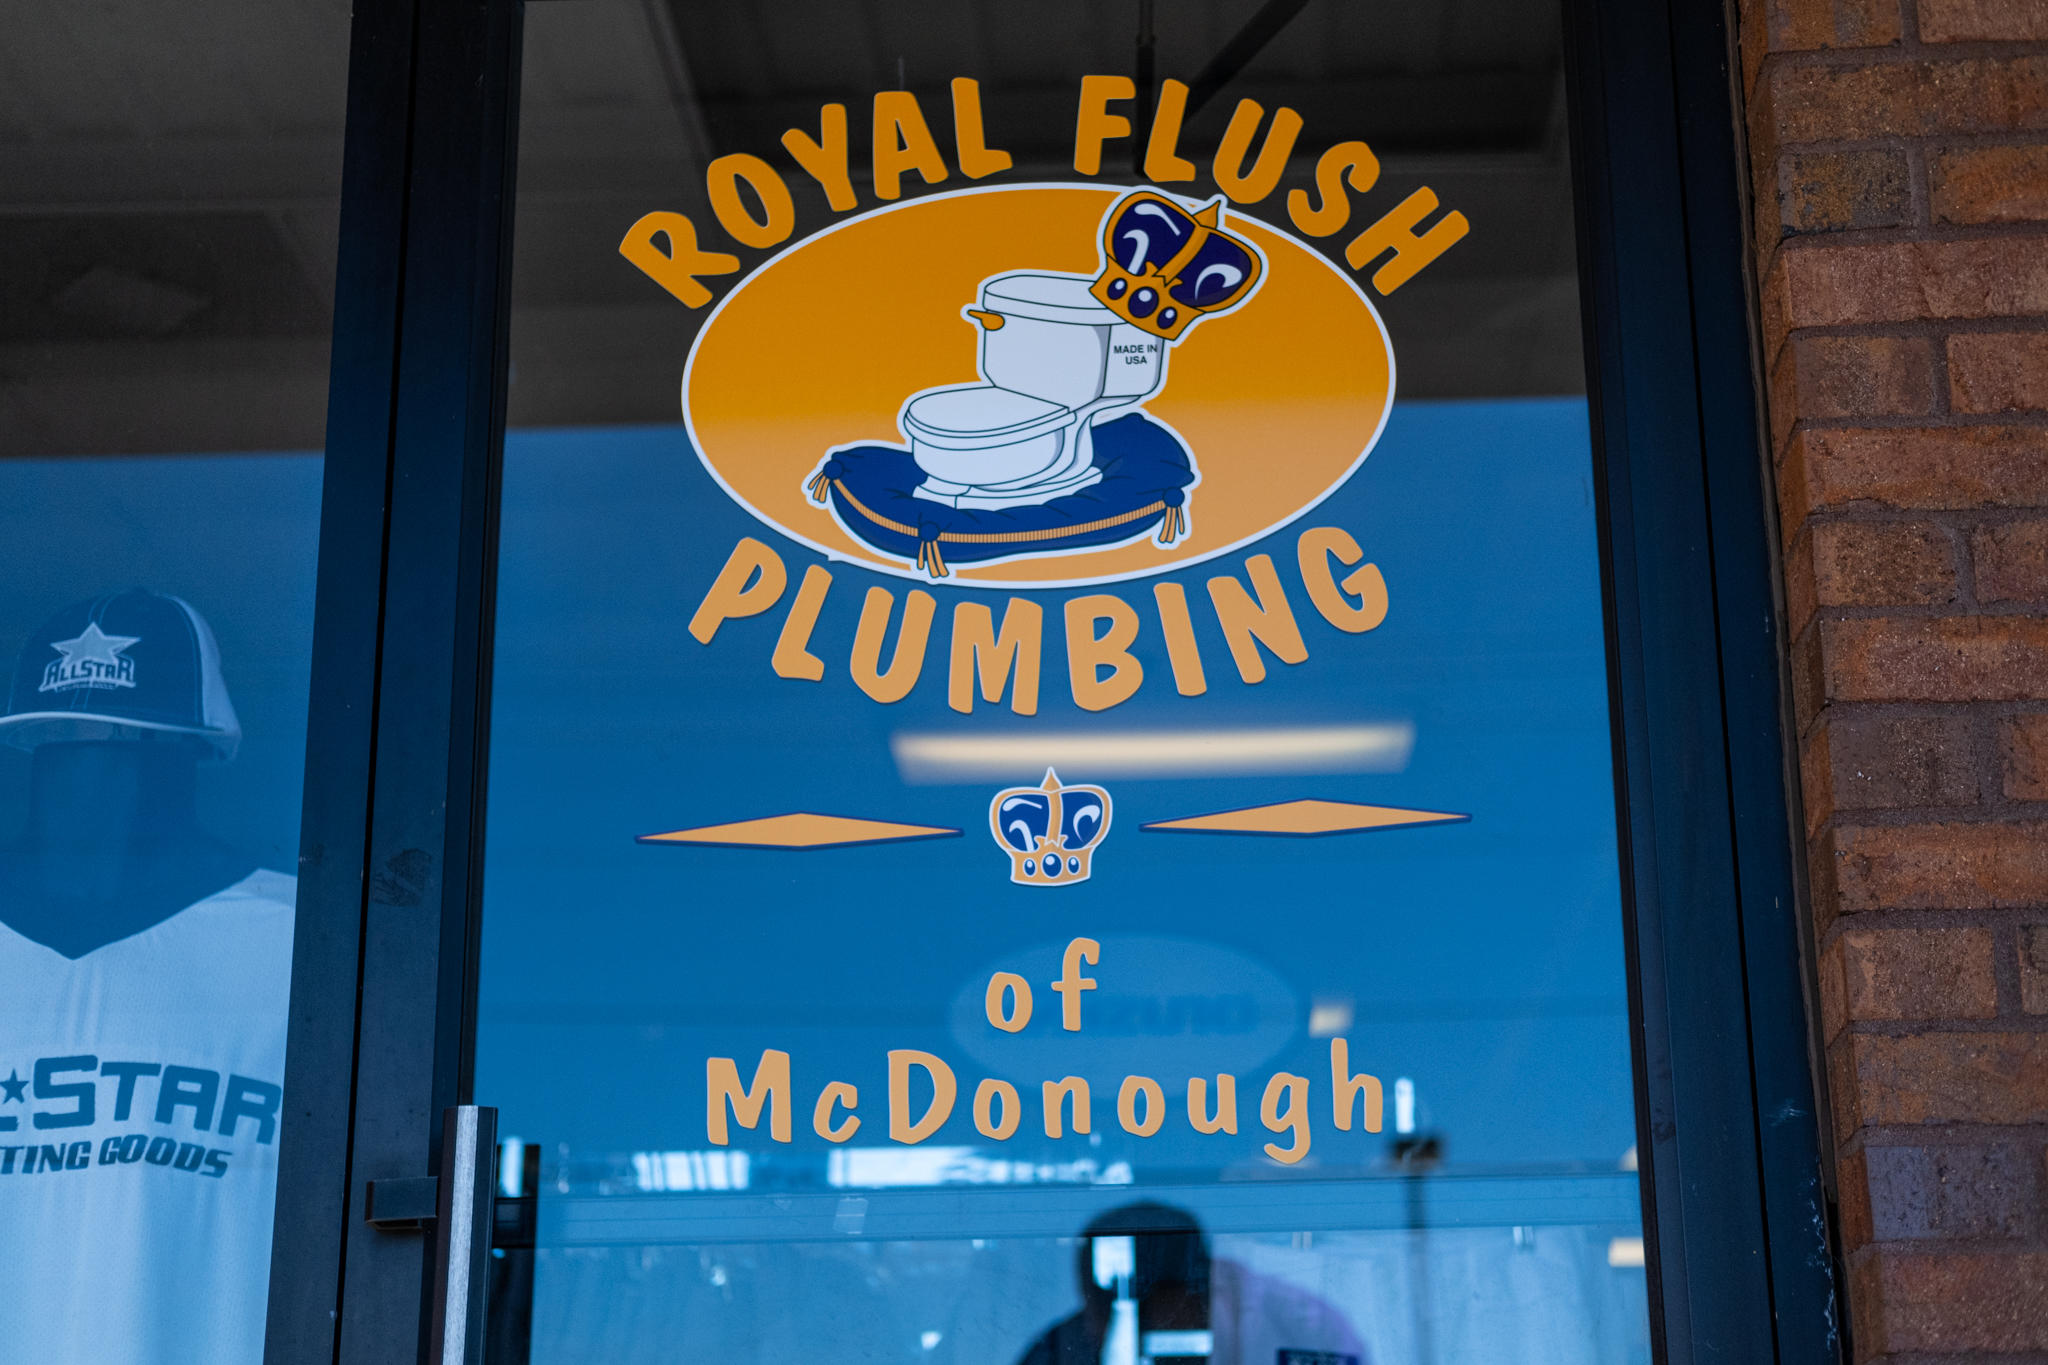 Royal Flush Plumbing of Mcdonough